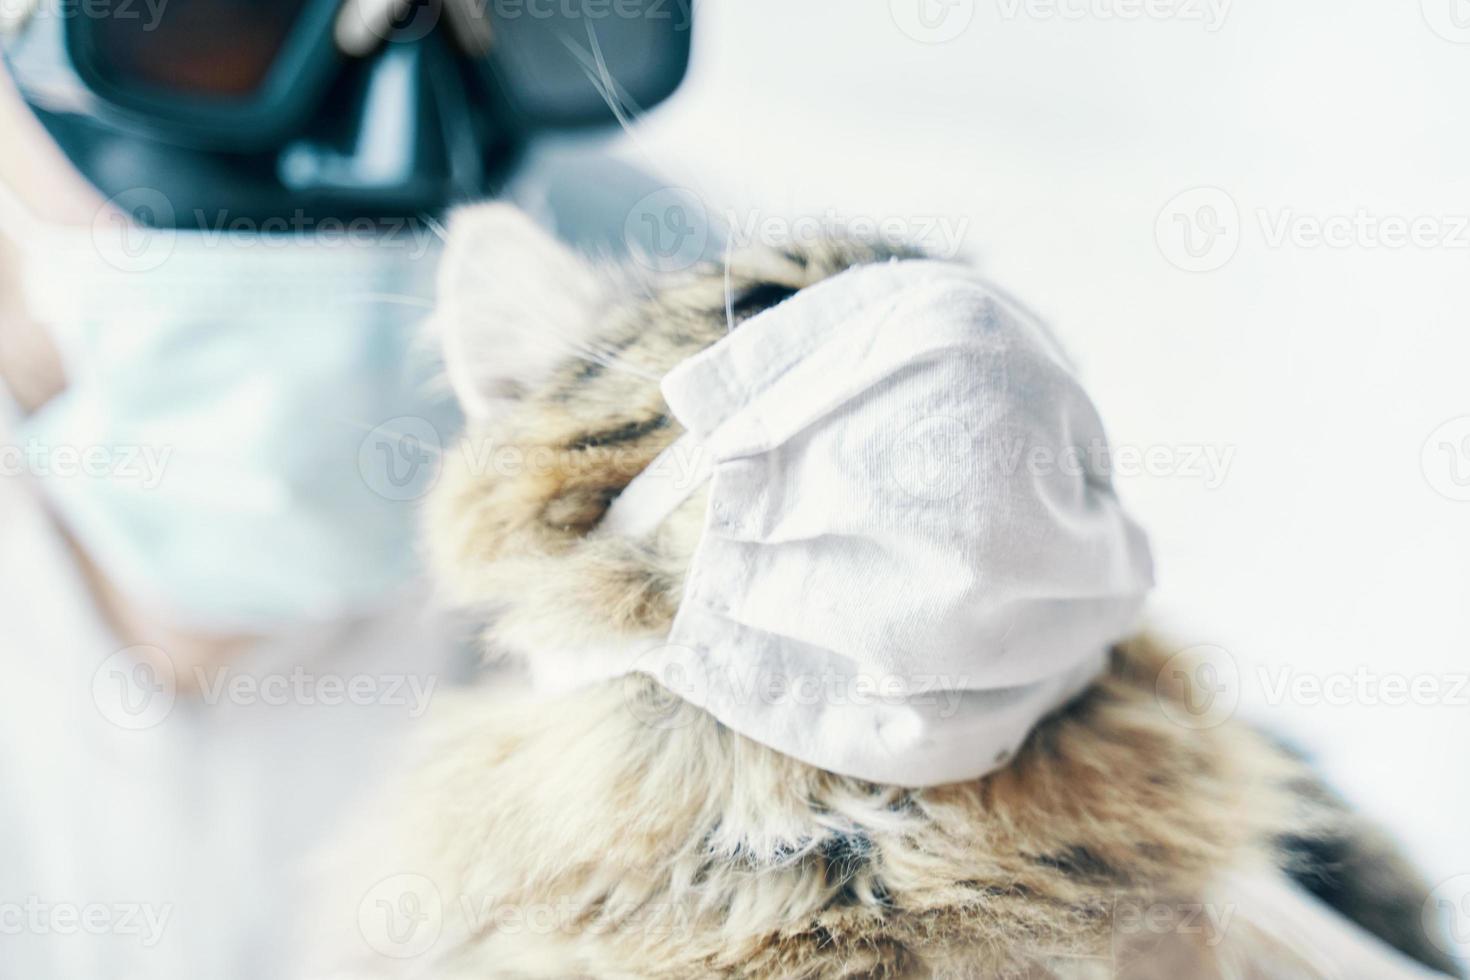 homem de terno e gato com máscara médica foto